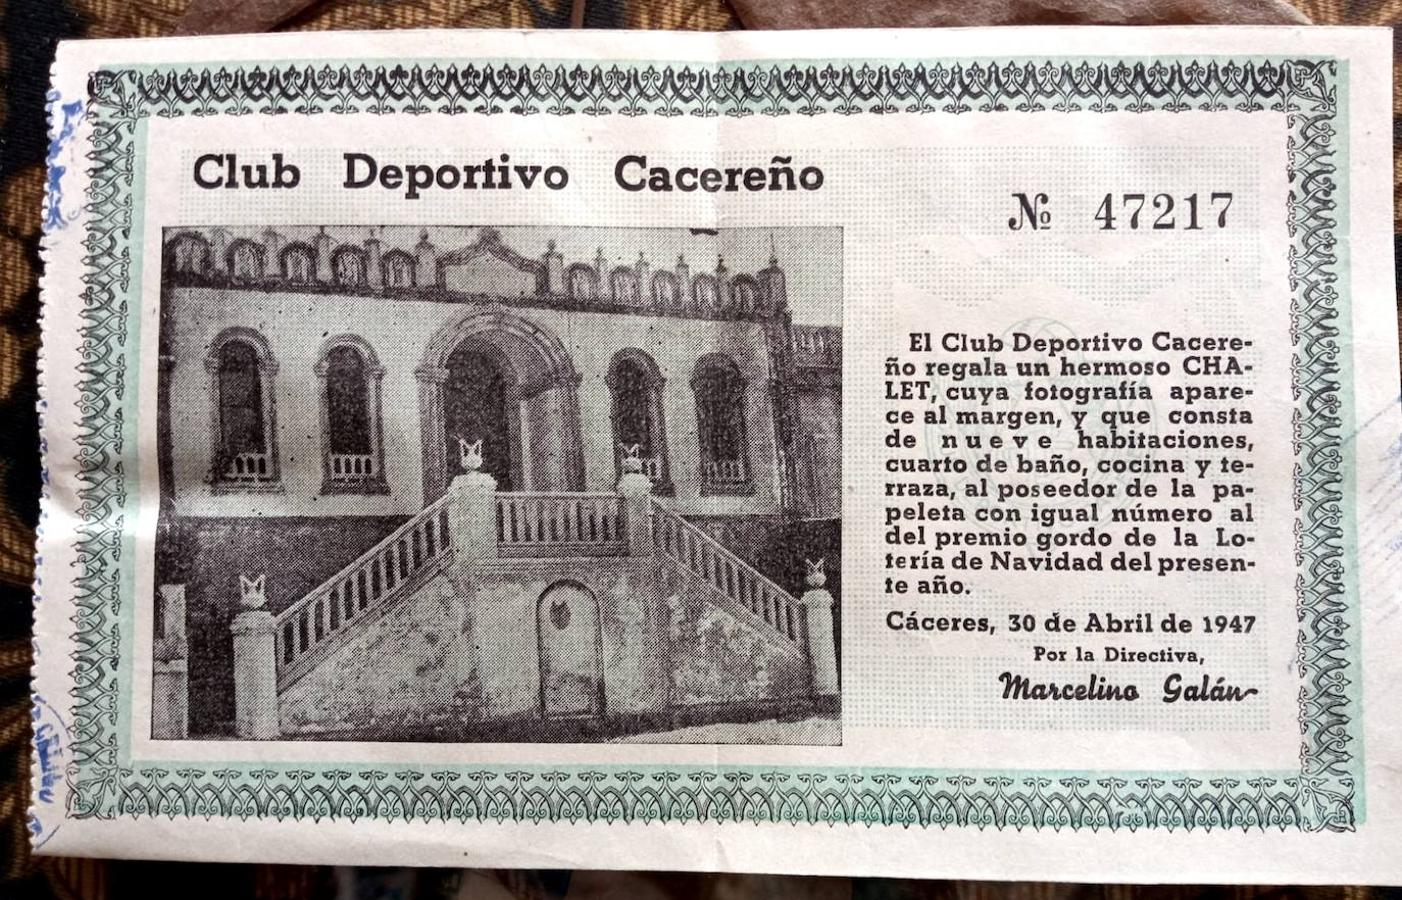 Cuando el Club Deportivo Cacereño rifó un chalet en 1947